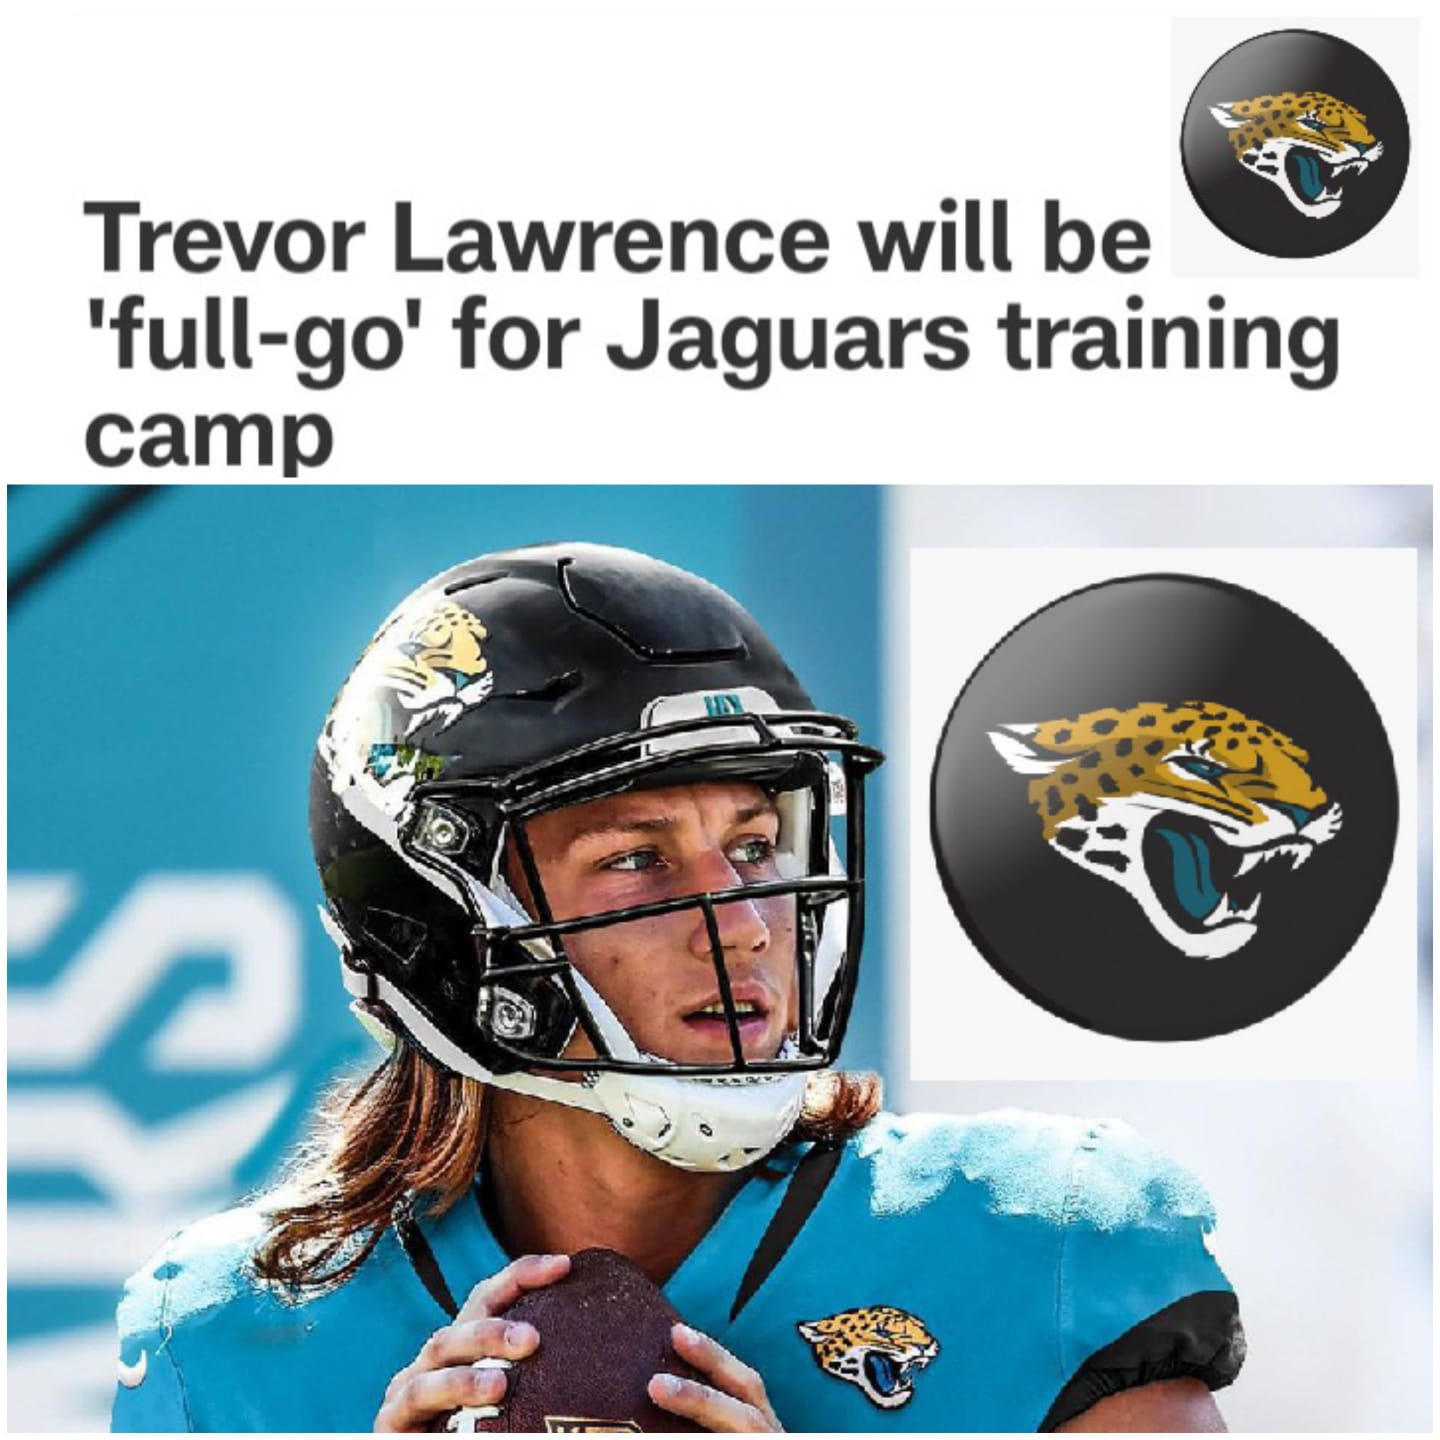 Trevor Lawrence will be full-go for jaguars training camp